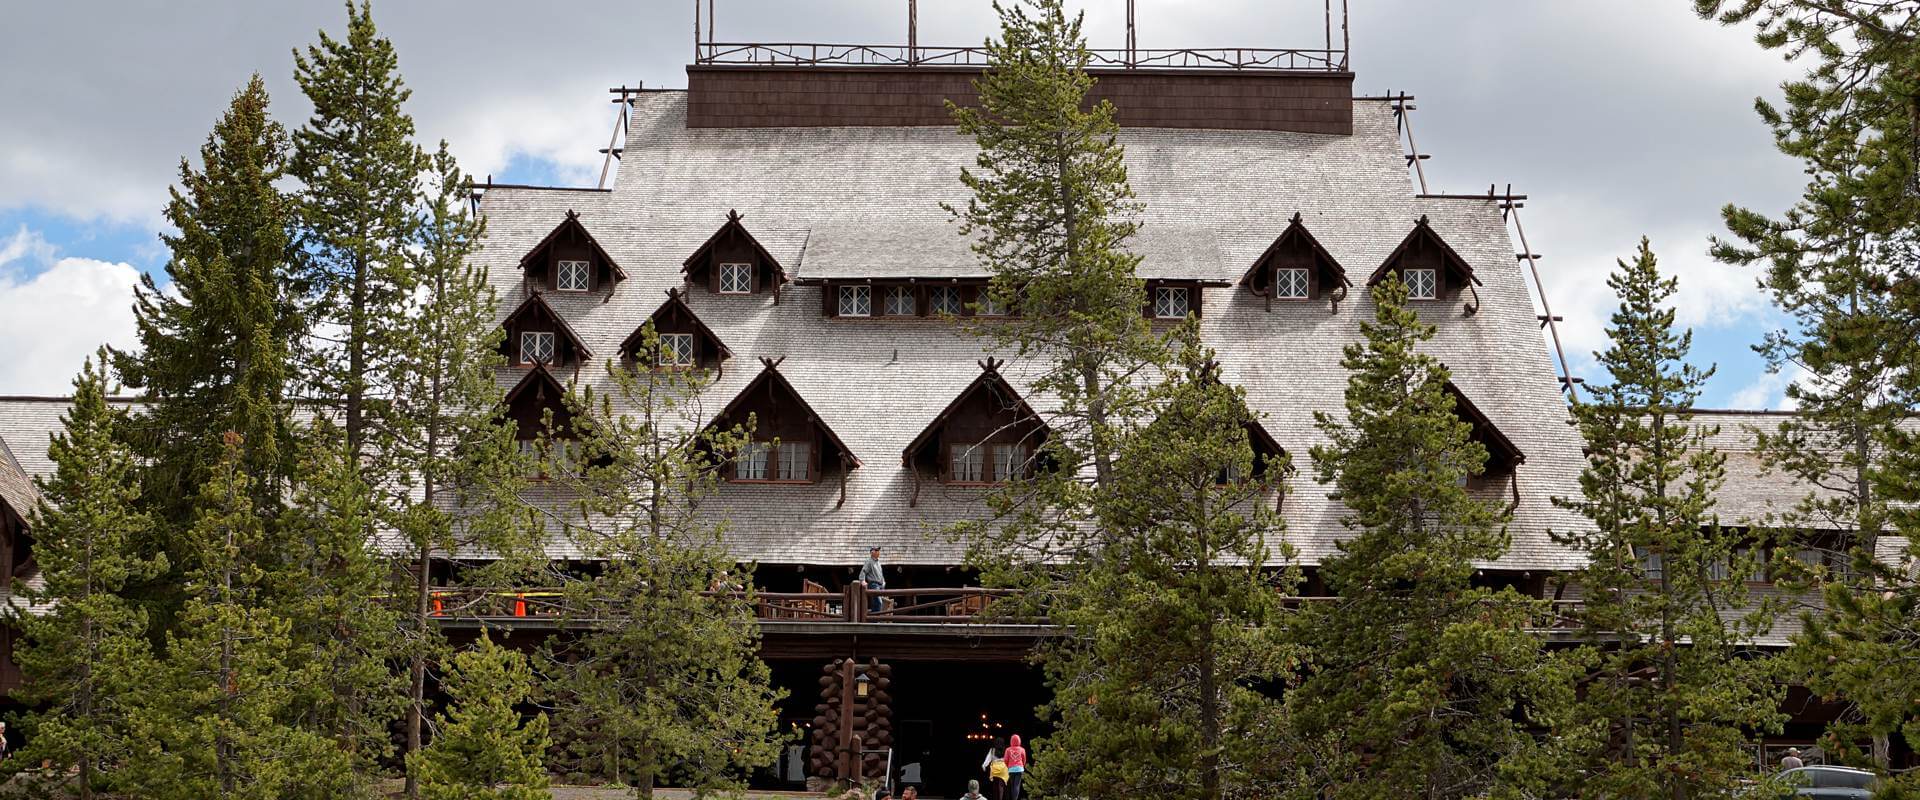 Altehrwürdig, rustikal oder mondän? Kulinarisch unterwegs im Yellowstone Nationalpark